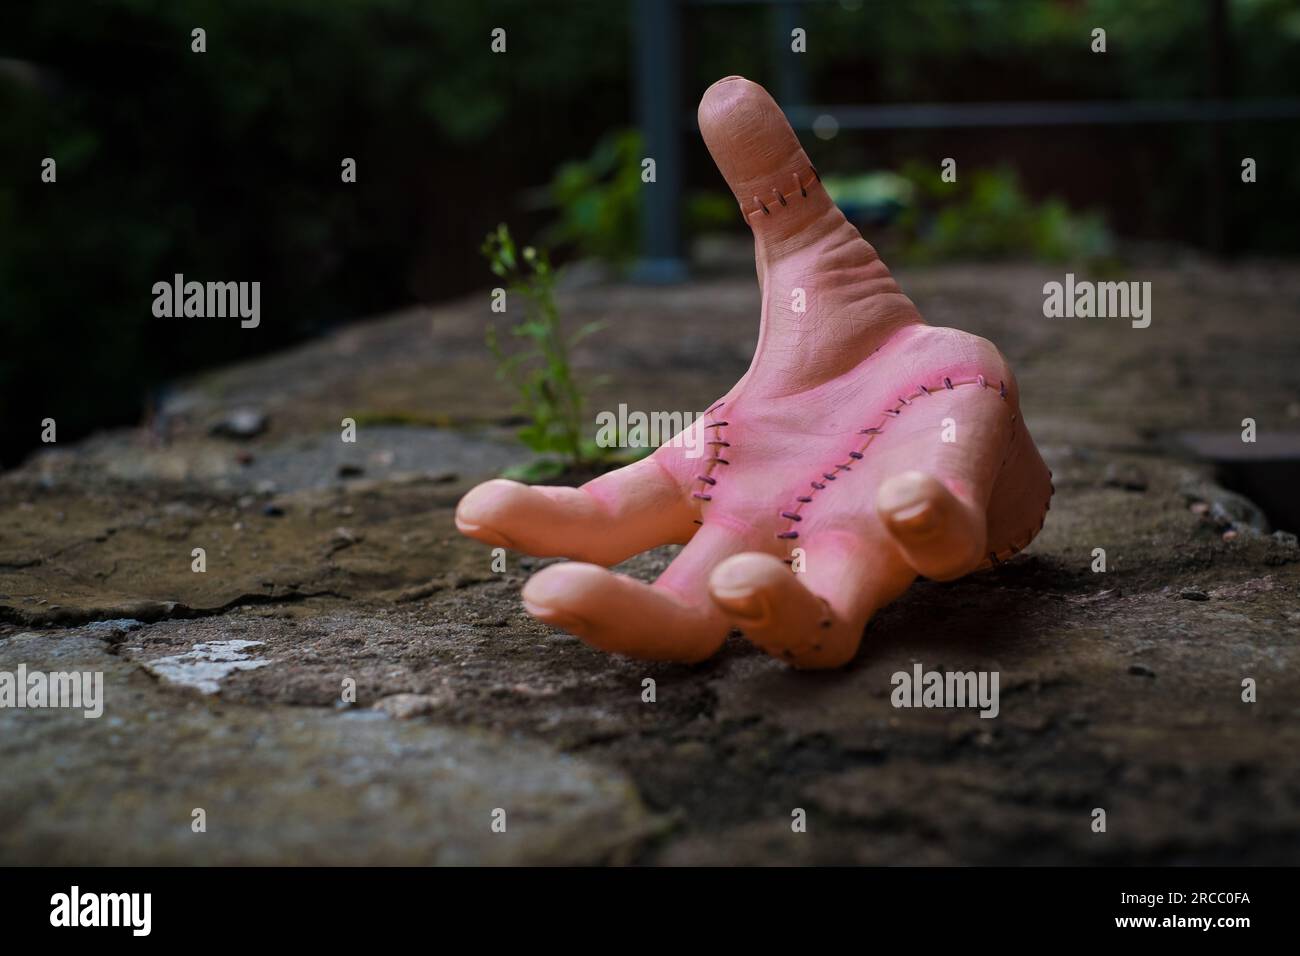 Realistische menschliche Hand oder ein Ding mit Narben und Stichen. Mittwoch-Addams-Filmkonzept. Stockfoto